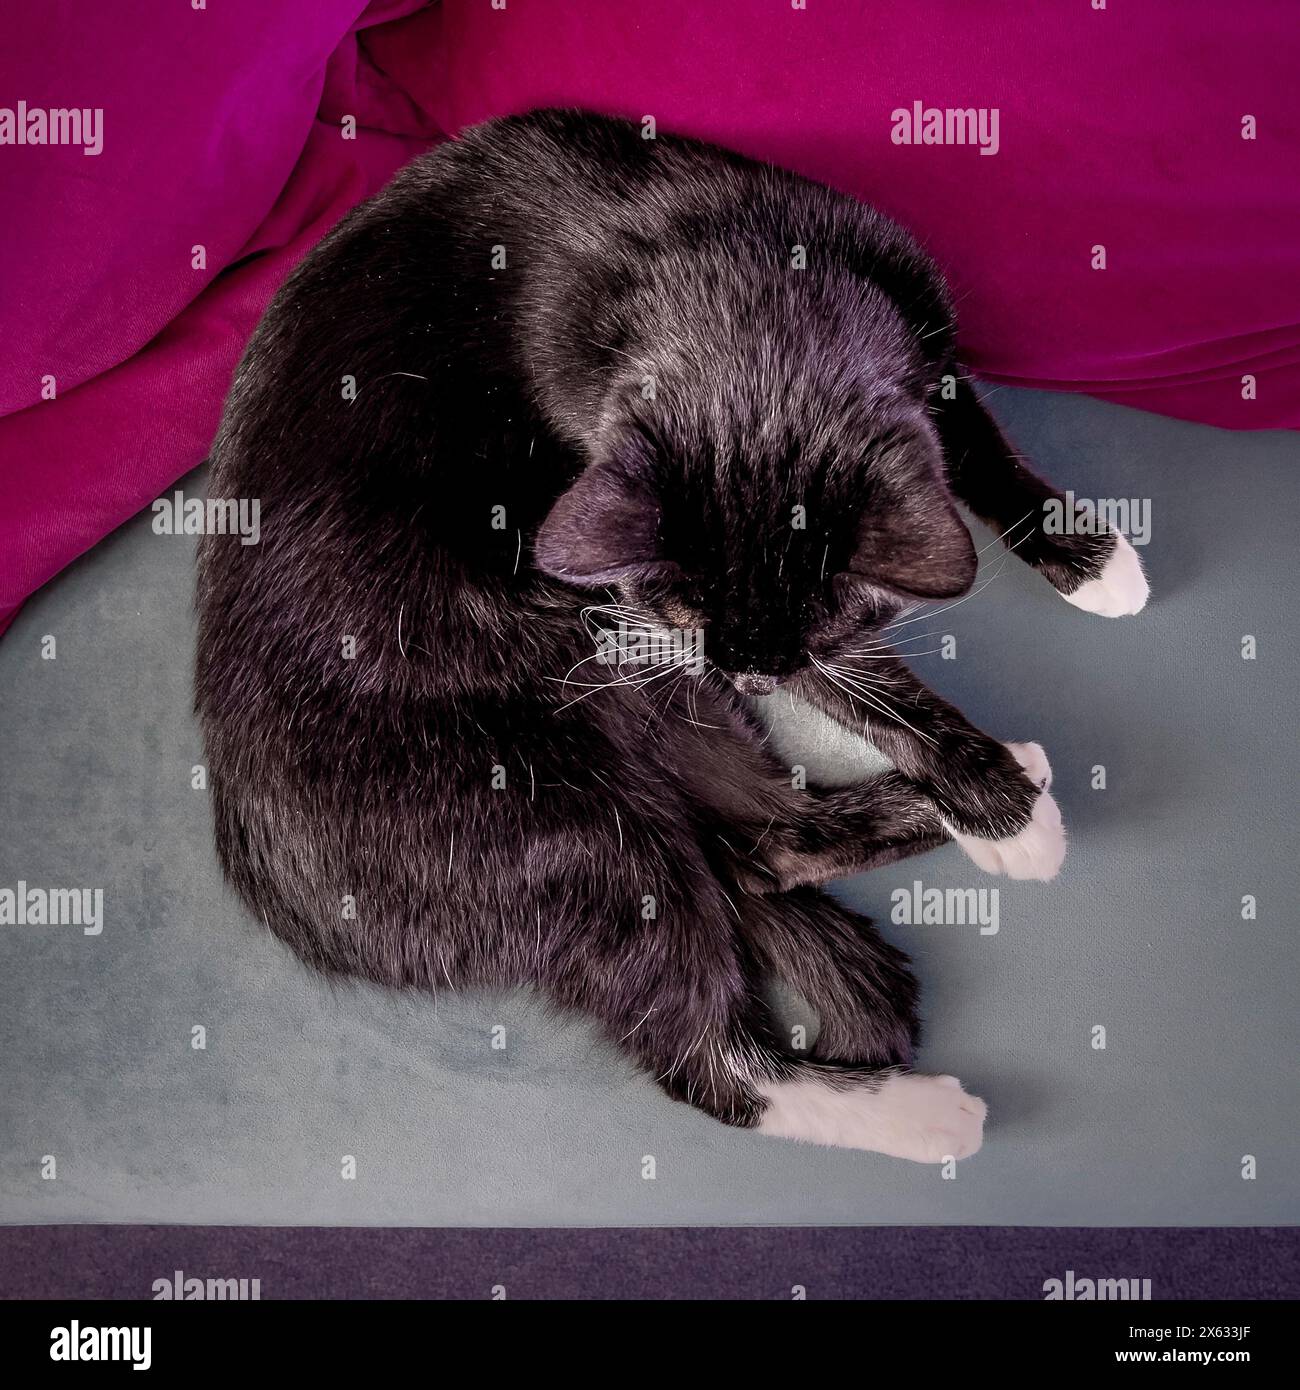 Schlafende schwarz-weiße Katze, eingeschlafen auf einem grauen Samtsofa mit hellrosa Kissen. Stockfoto